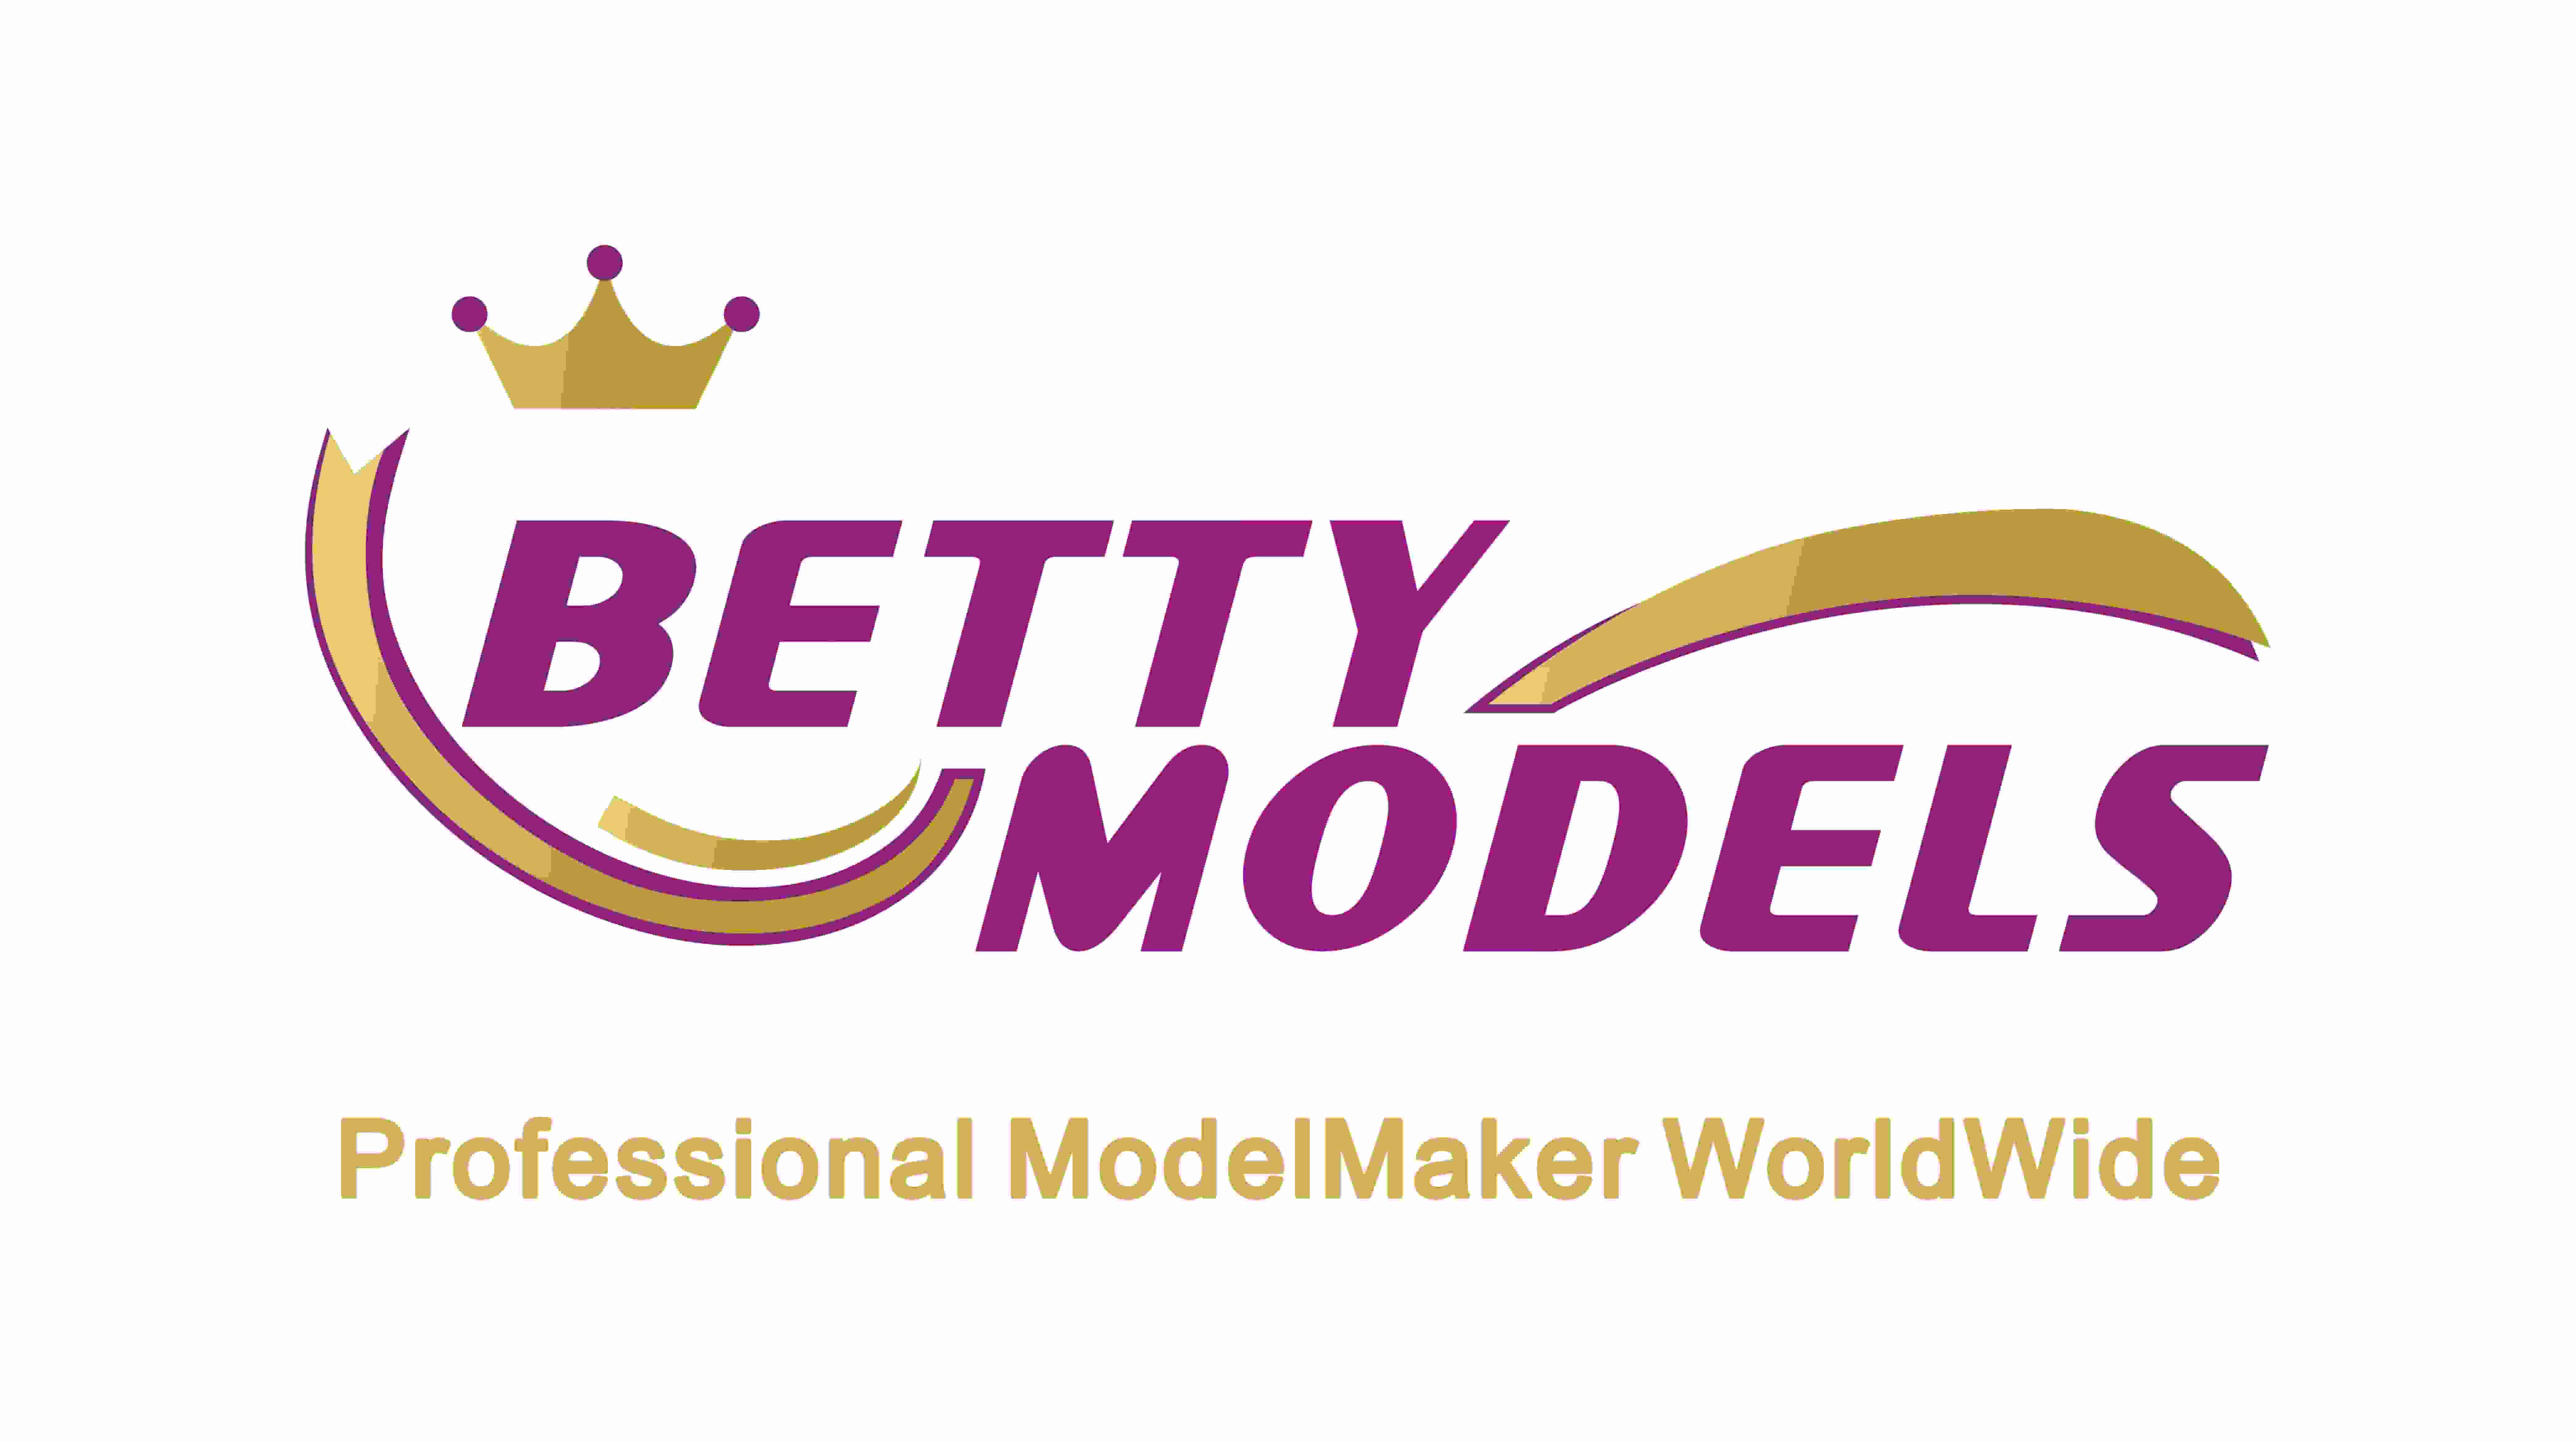 Il logo di Betty Models cambia nel nuovo logo